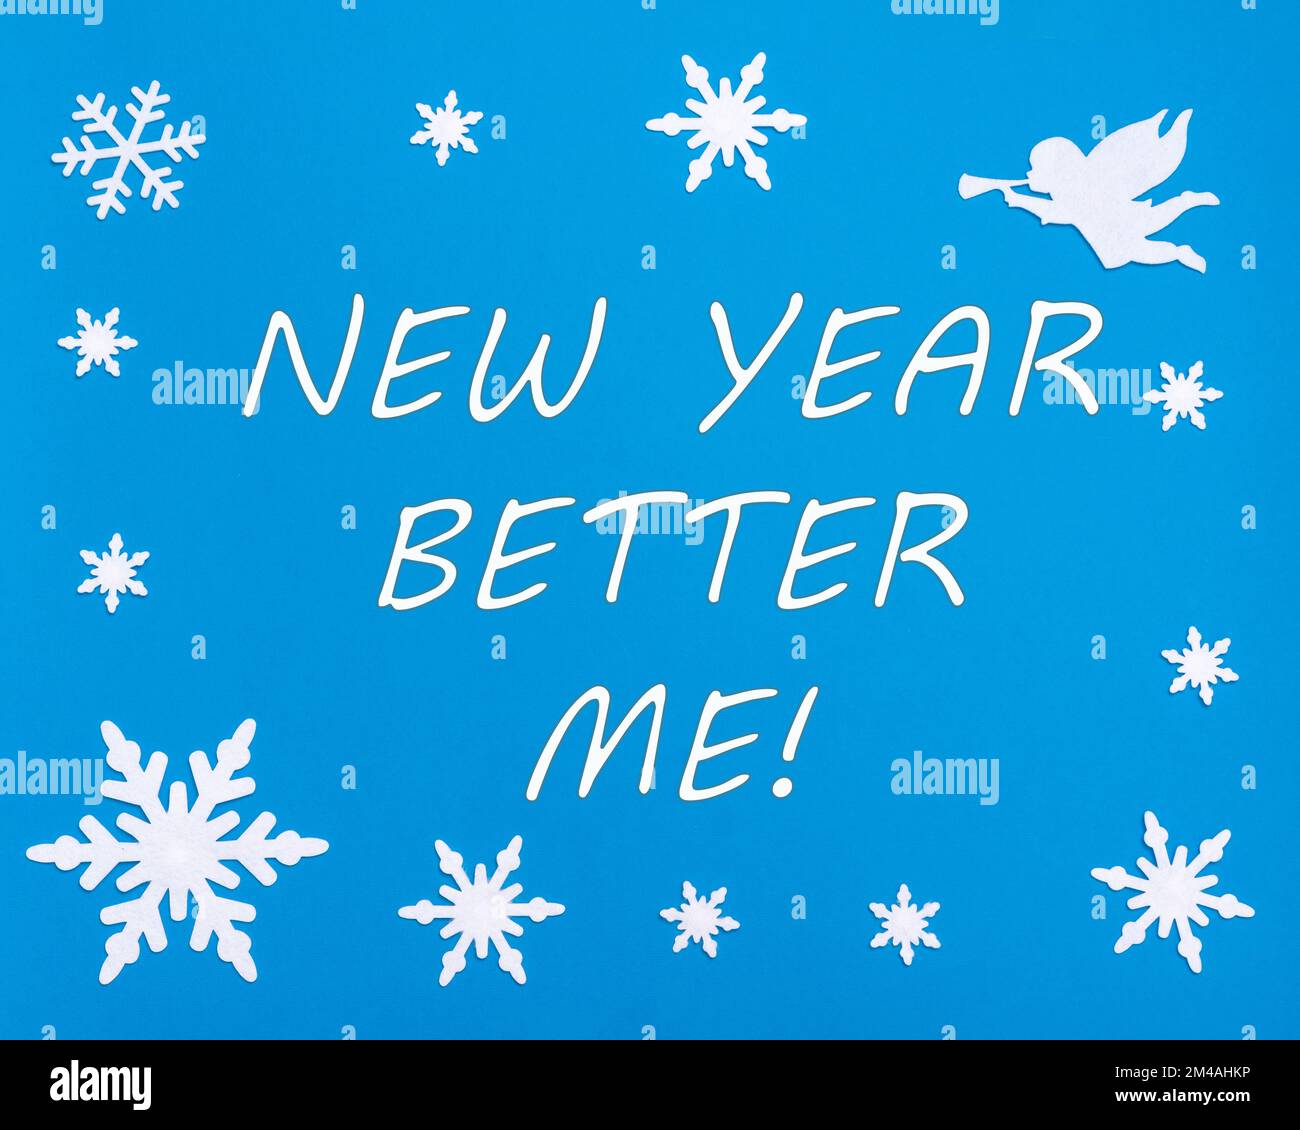 Motivationskarte für das neue Jahr. Schreib SILVESTER BESSER MIR auf blauem Hintergrund mit Weihnachts-Schneeflocken, einem weißen Engel. Veränderungen in dir selbst. Psychologie. Stockfoto